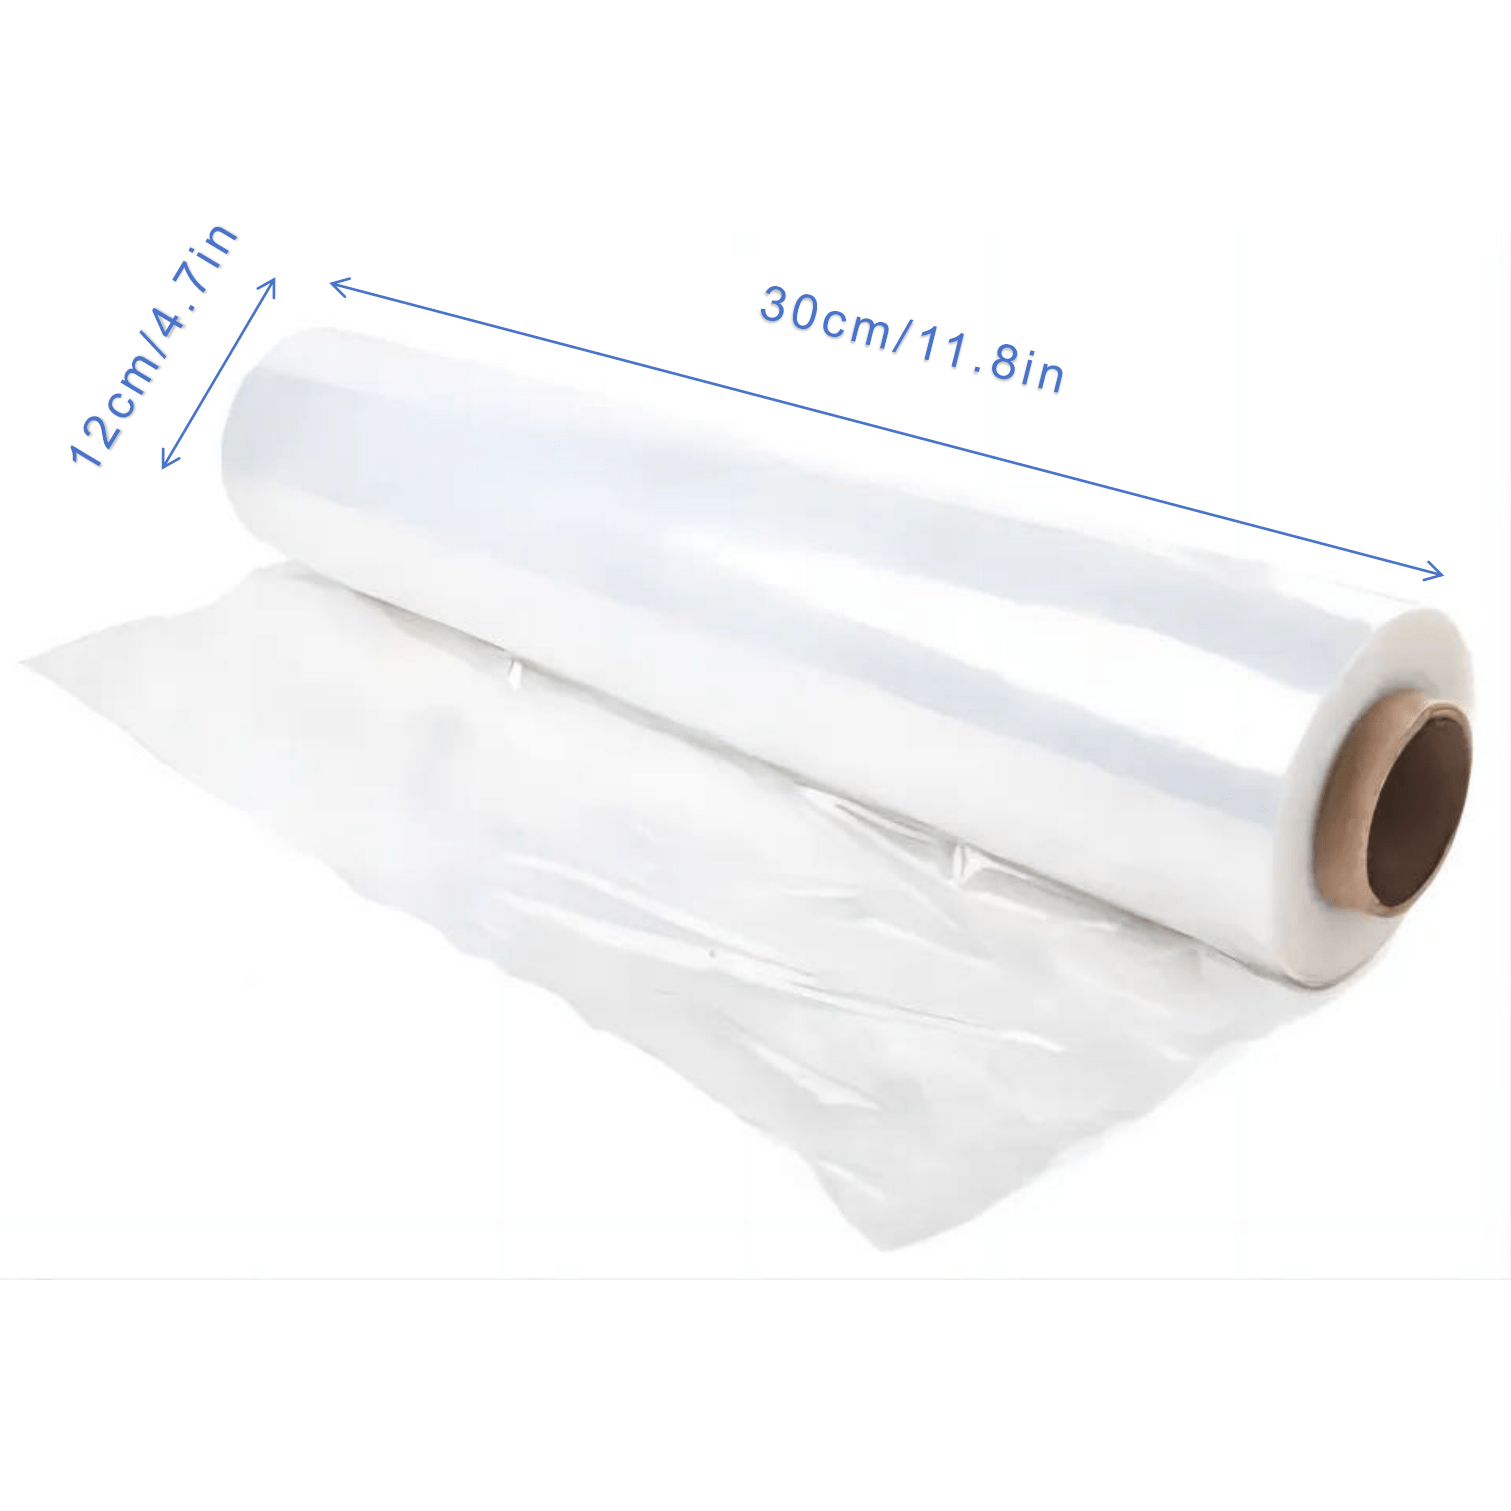 6 Rollos de Plástico para Embalar. Film Transparente